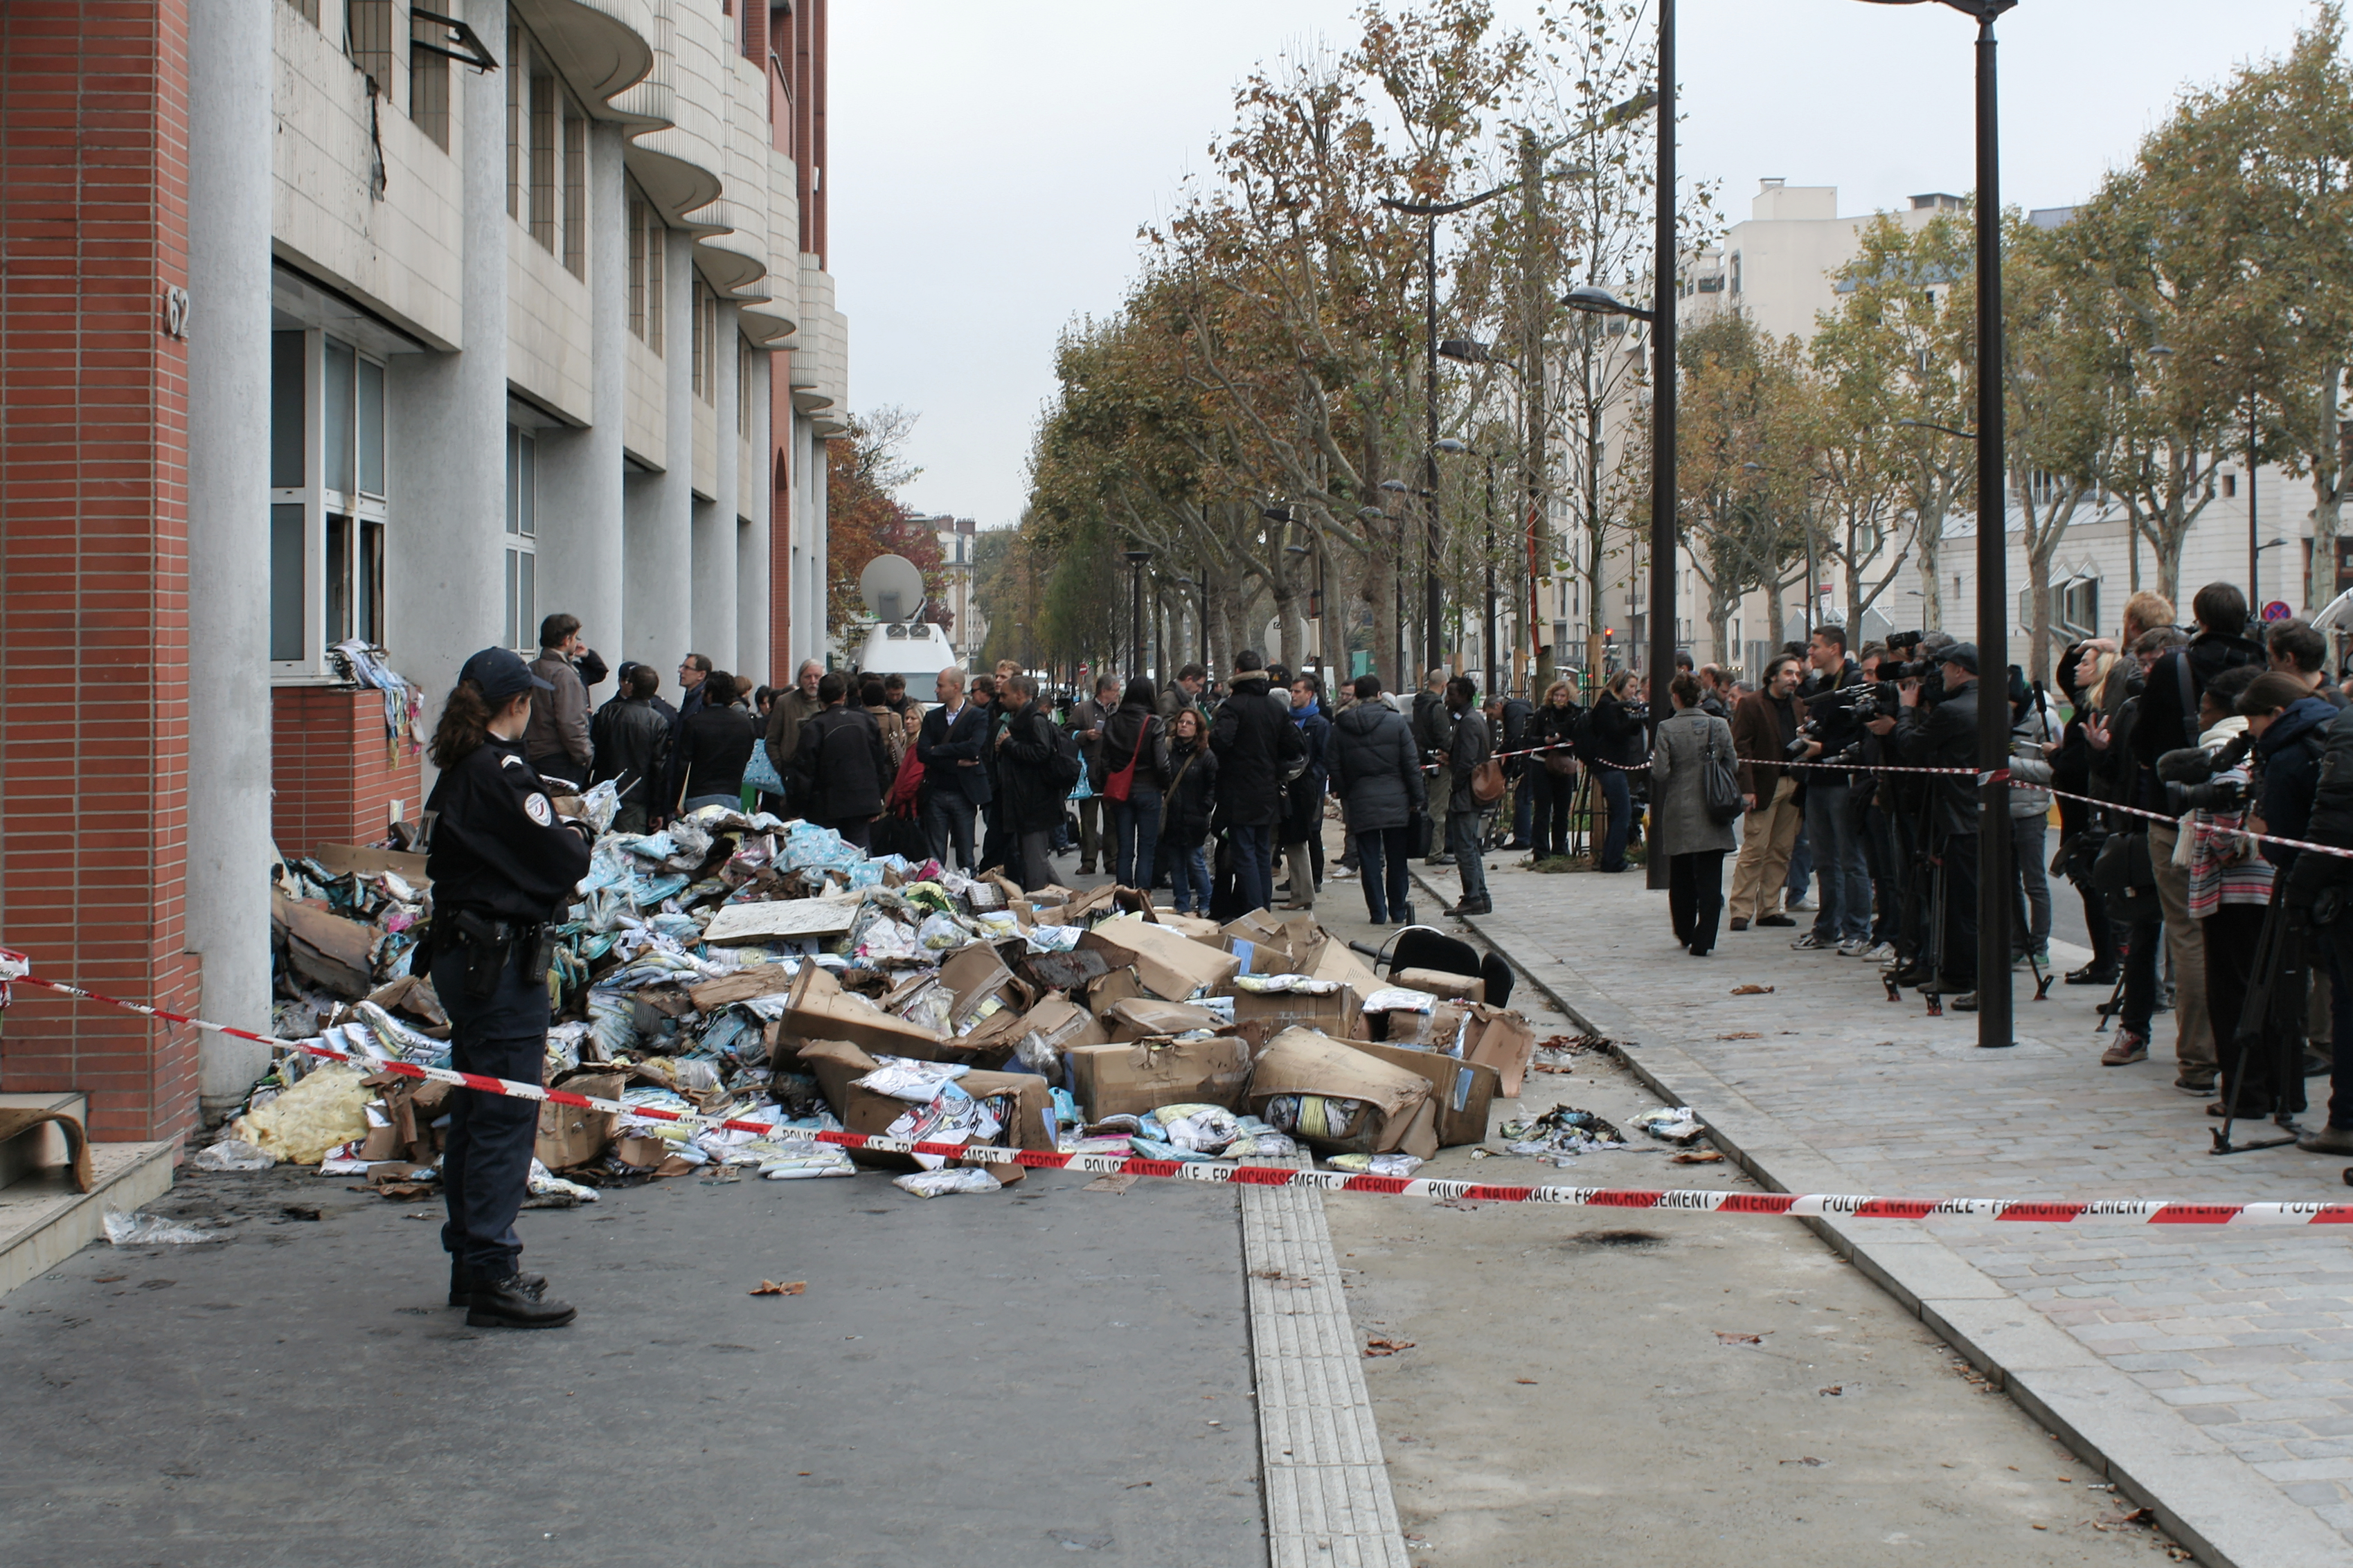 Charlie Hebdo terrorist attack aftermath in 2011